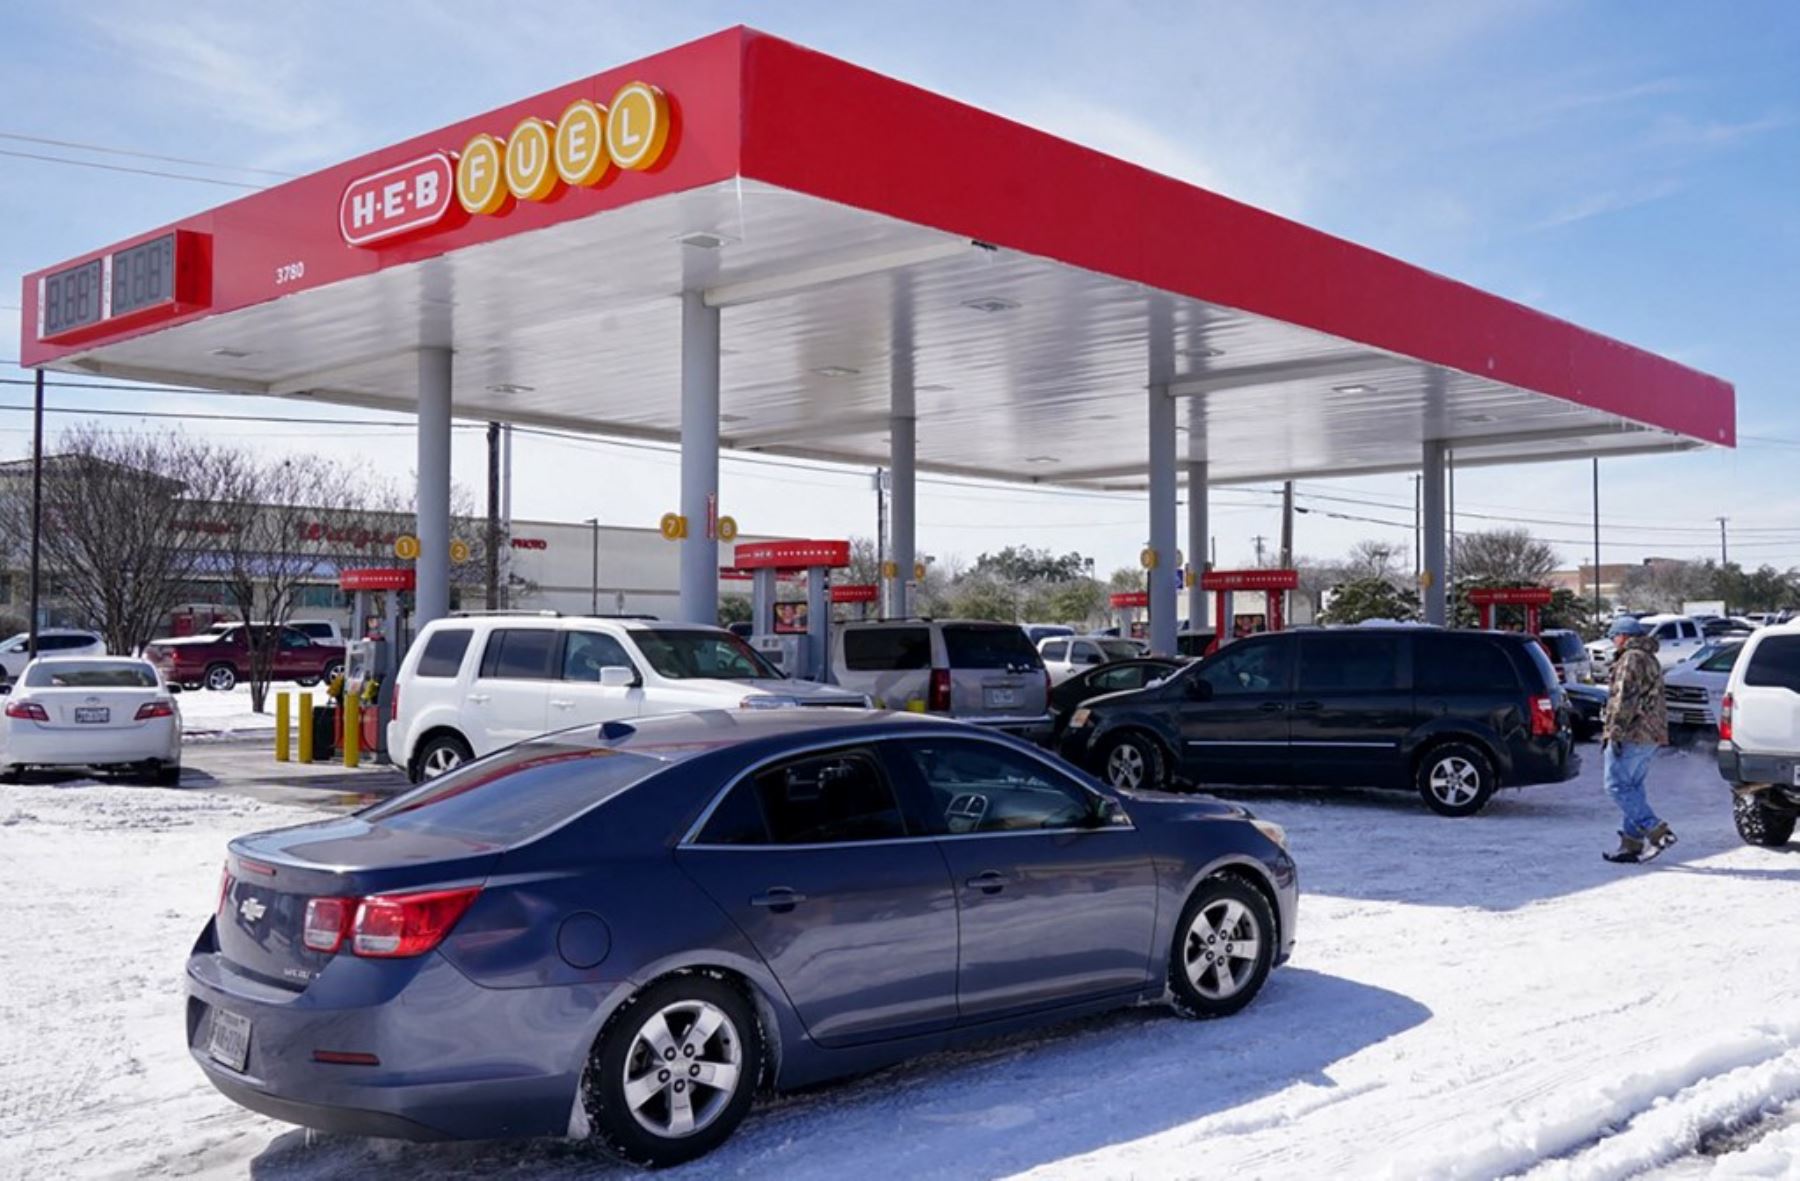 Los precios de la gasolina en Estados Unidos marcan un nuevo récord